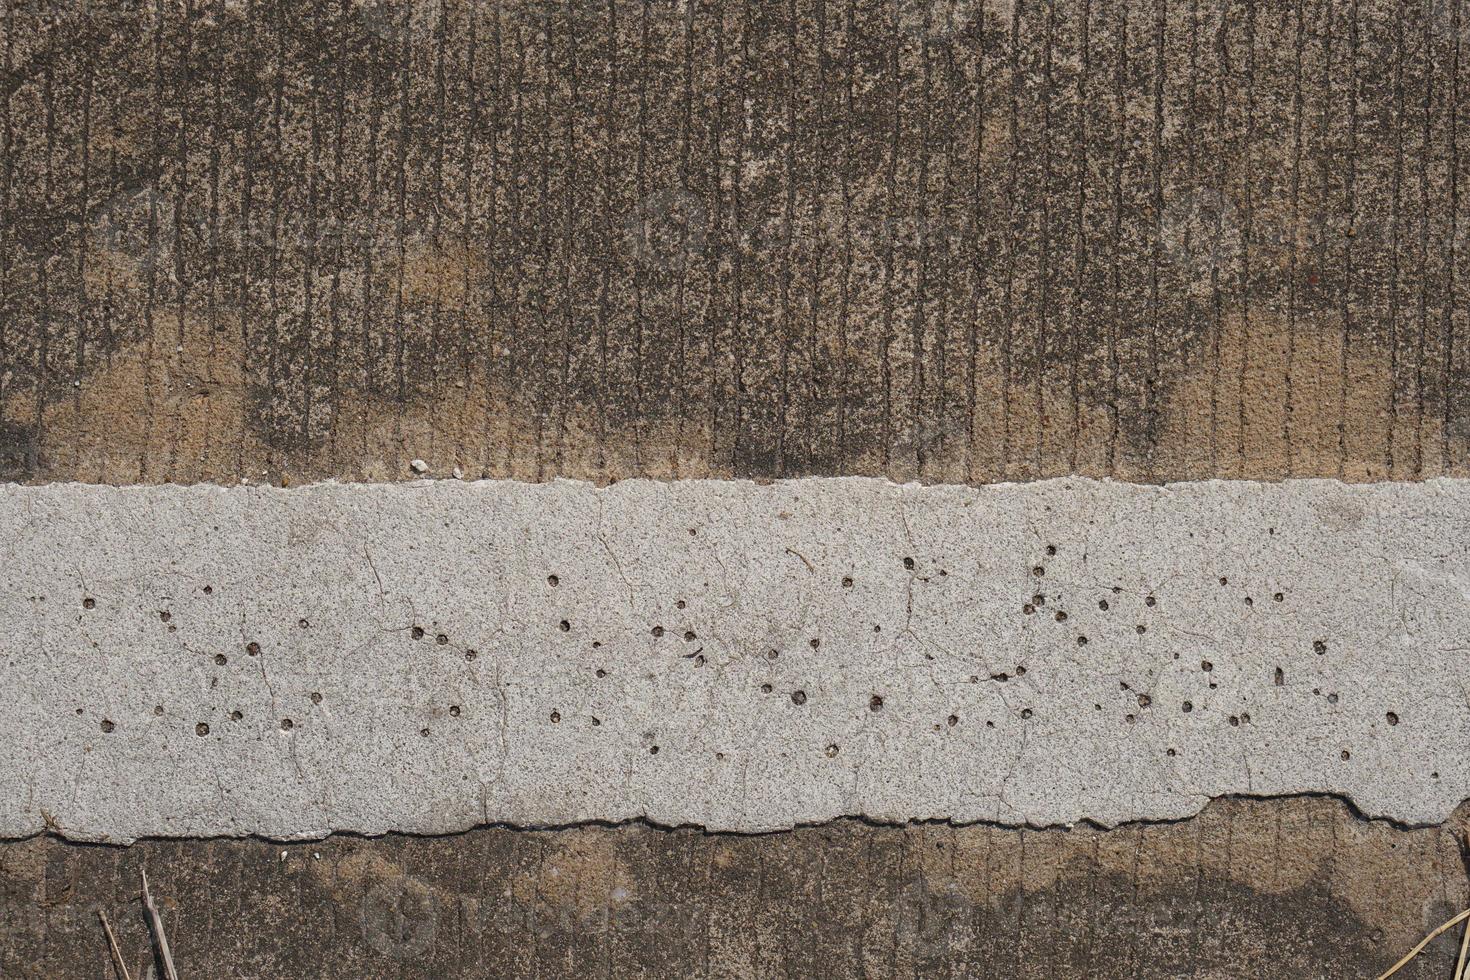 de cement golv har sprickor och mönster. foto